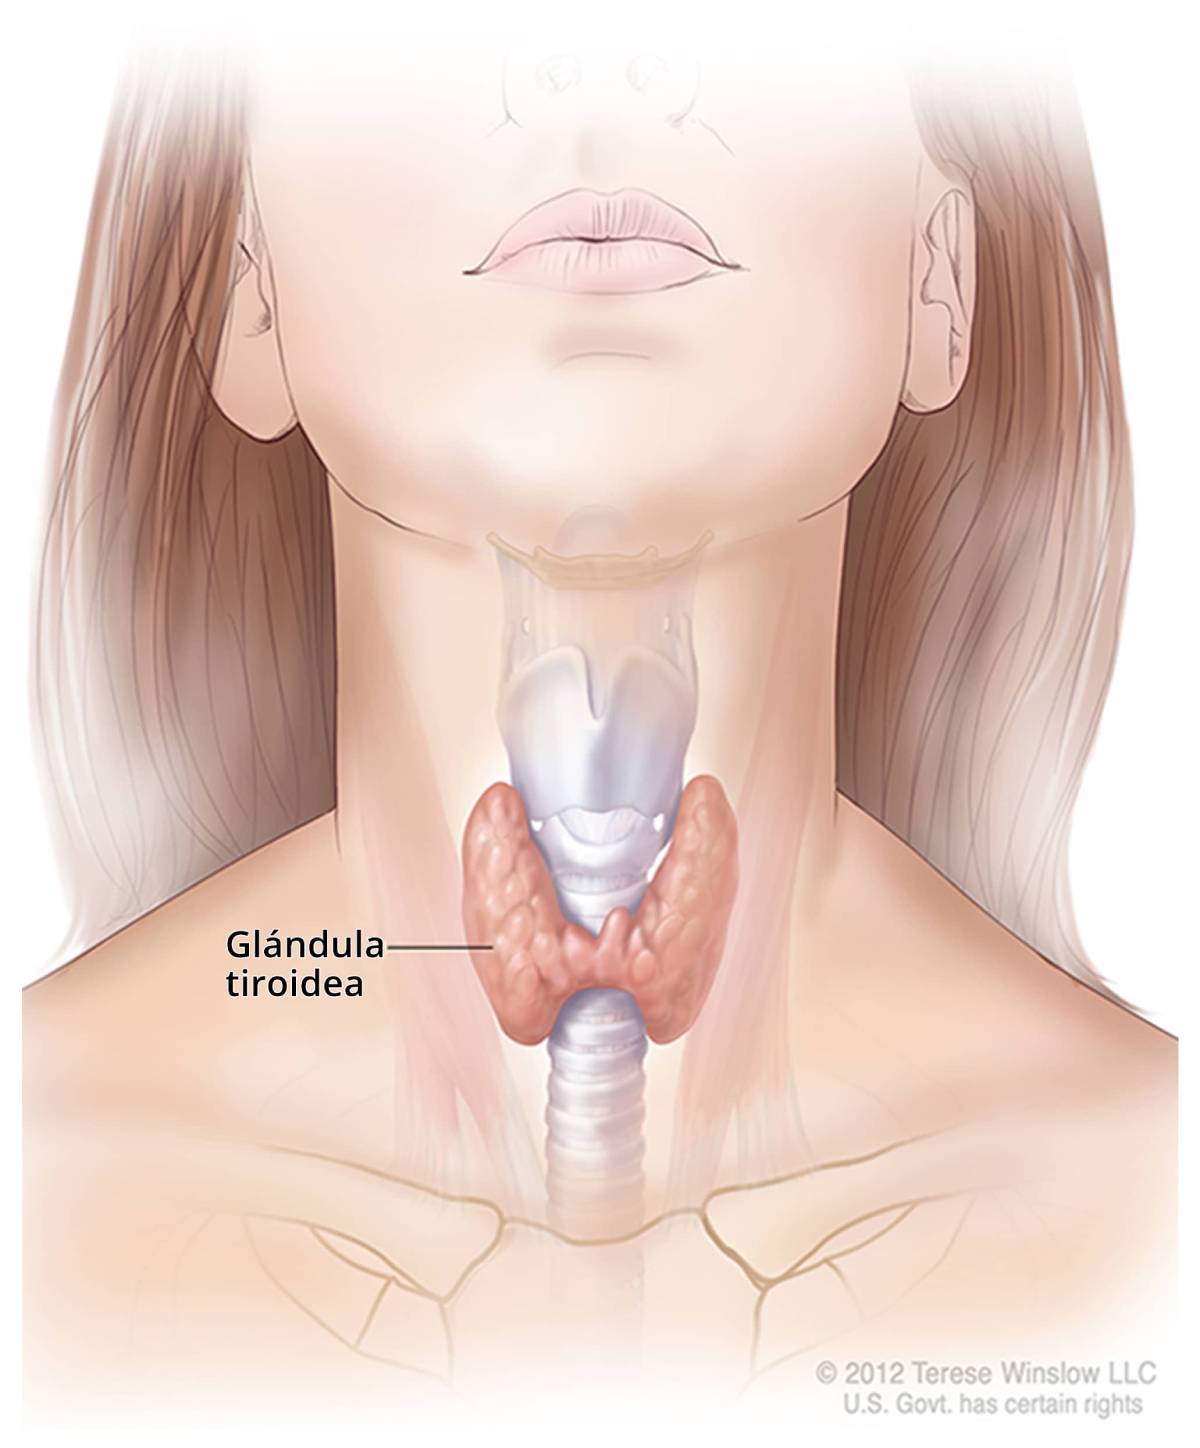 Ilustración de la tiroides y su ubicación en el cuello